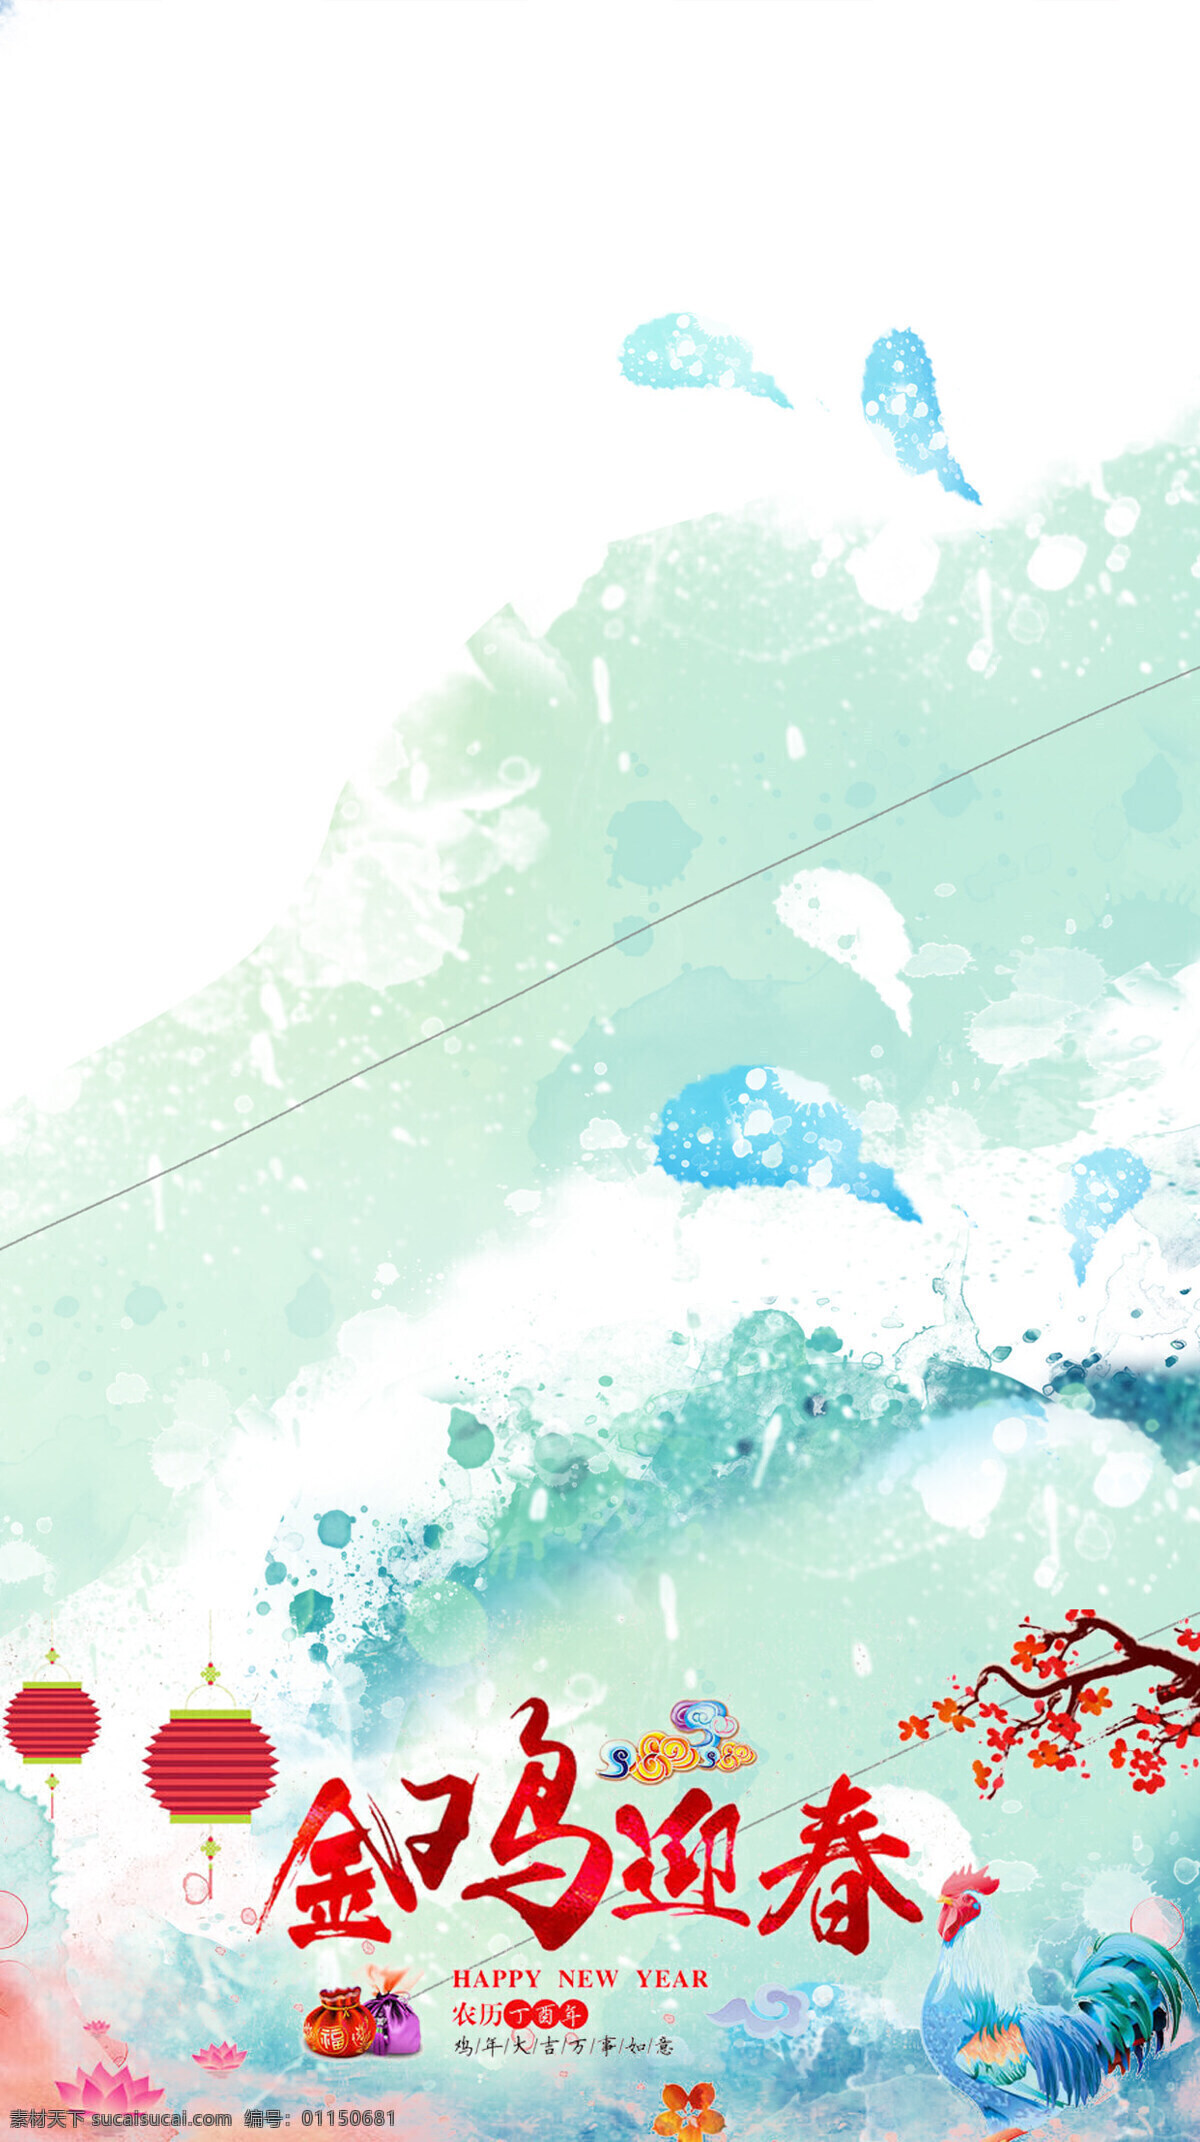 鸡年 海报 h5 背景 抽象 蓝色渐变 涂鸦 红色灯笼 梅花 h5背景